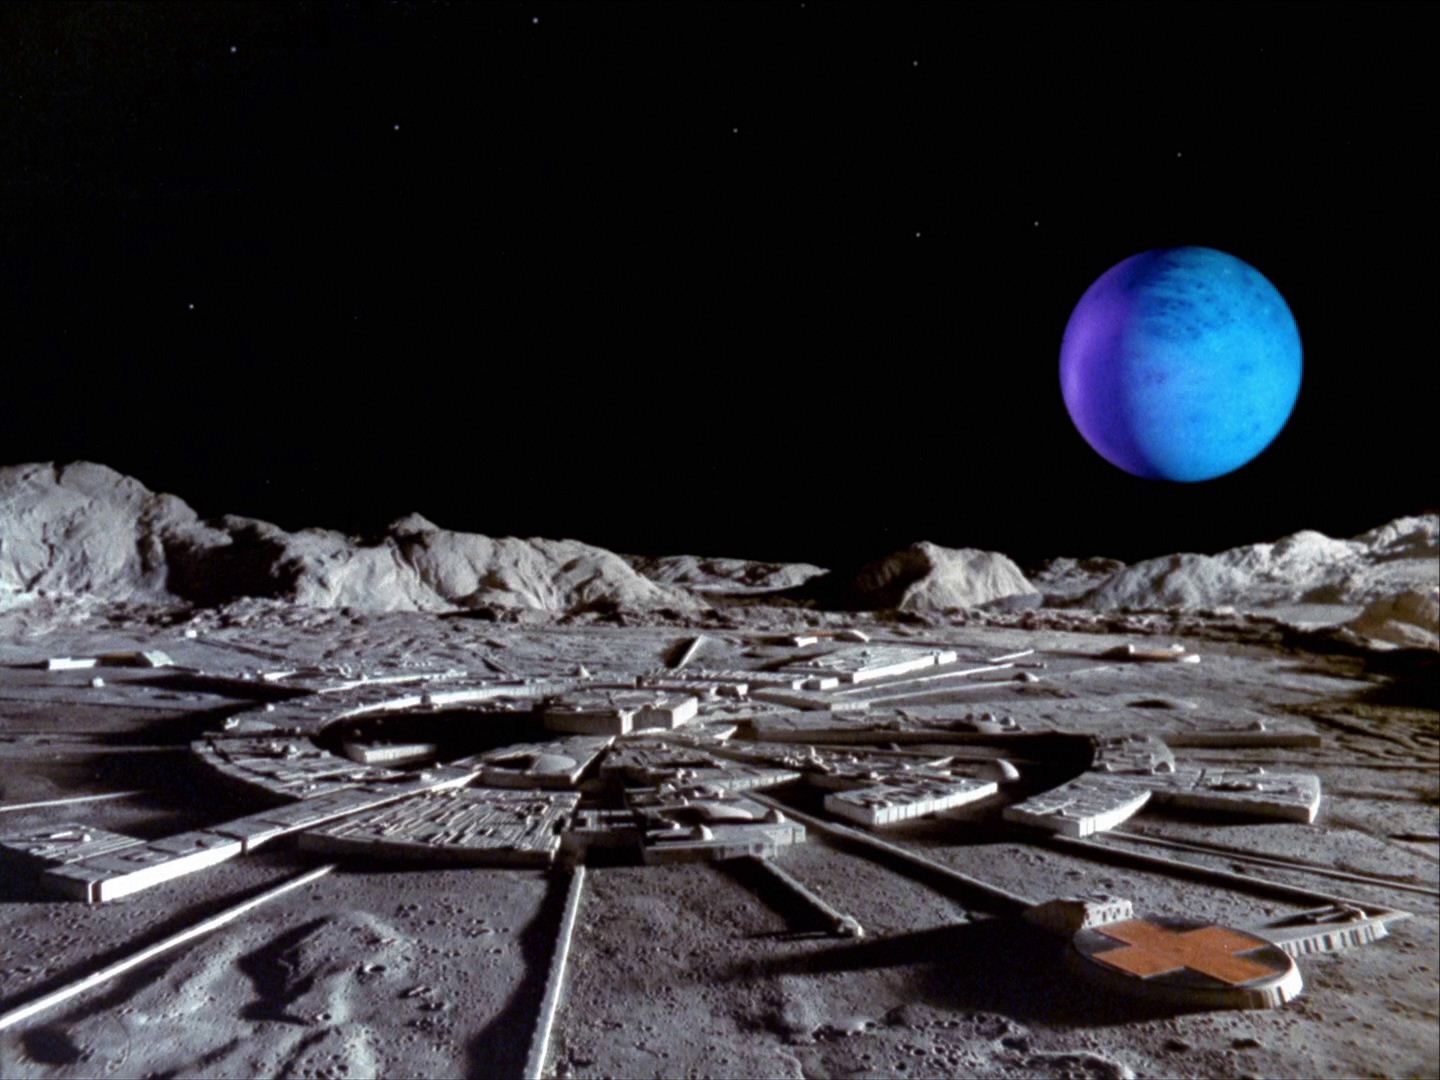 Image: China could claim parts of the moon, NASA head warns